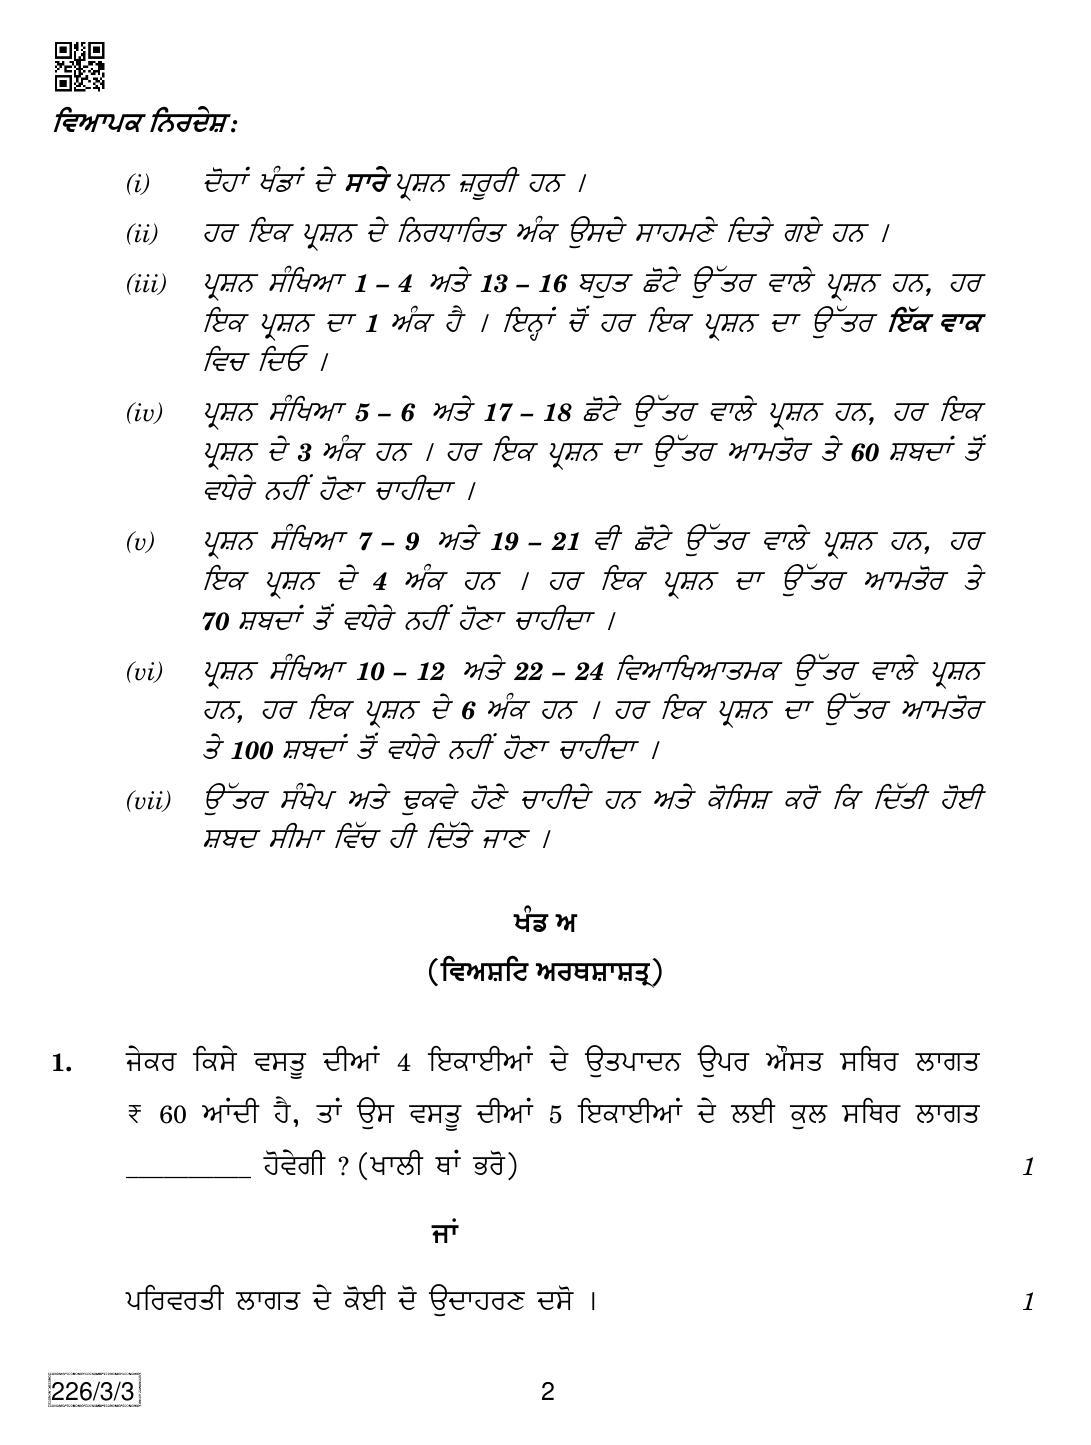 CBSE Class 12 226-3-3 Economics (Punjabi) 2019 Question Paper - Page 2